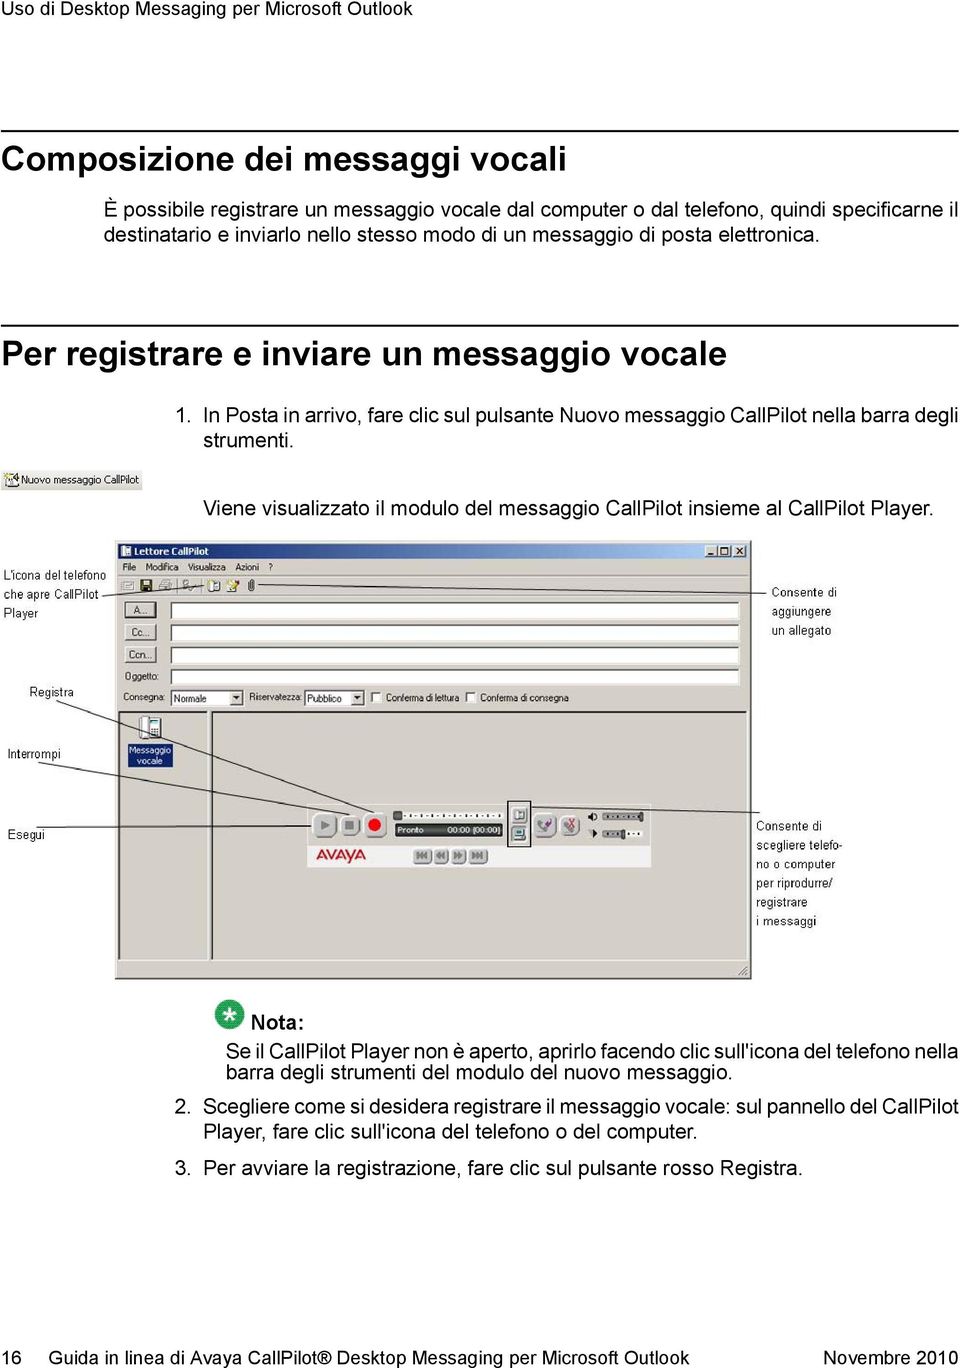 In Posta in arrivo, fare clic sul pulsante Nuovo messaggio CallPilot nella barra degli strumenti. Viene visualizzato il modulo del messaggio CallPilot insieme al CallPilot Player.